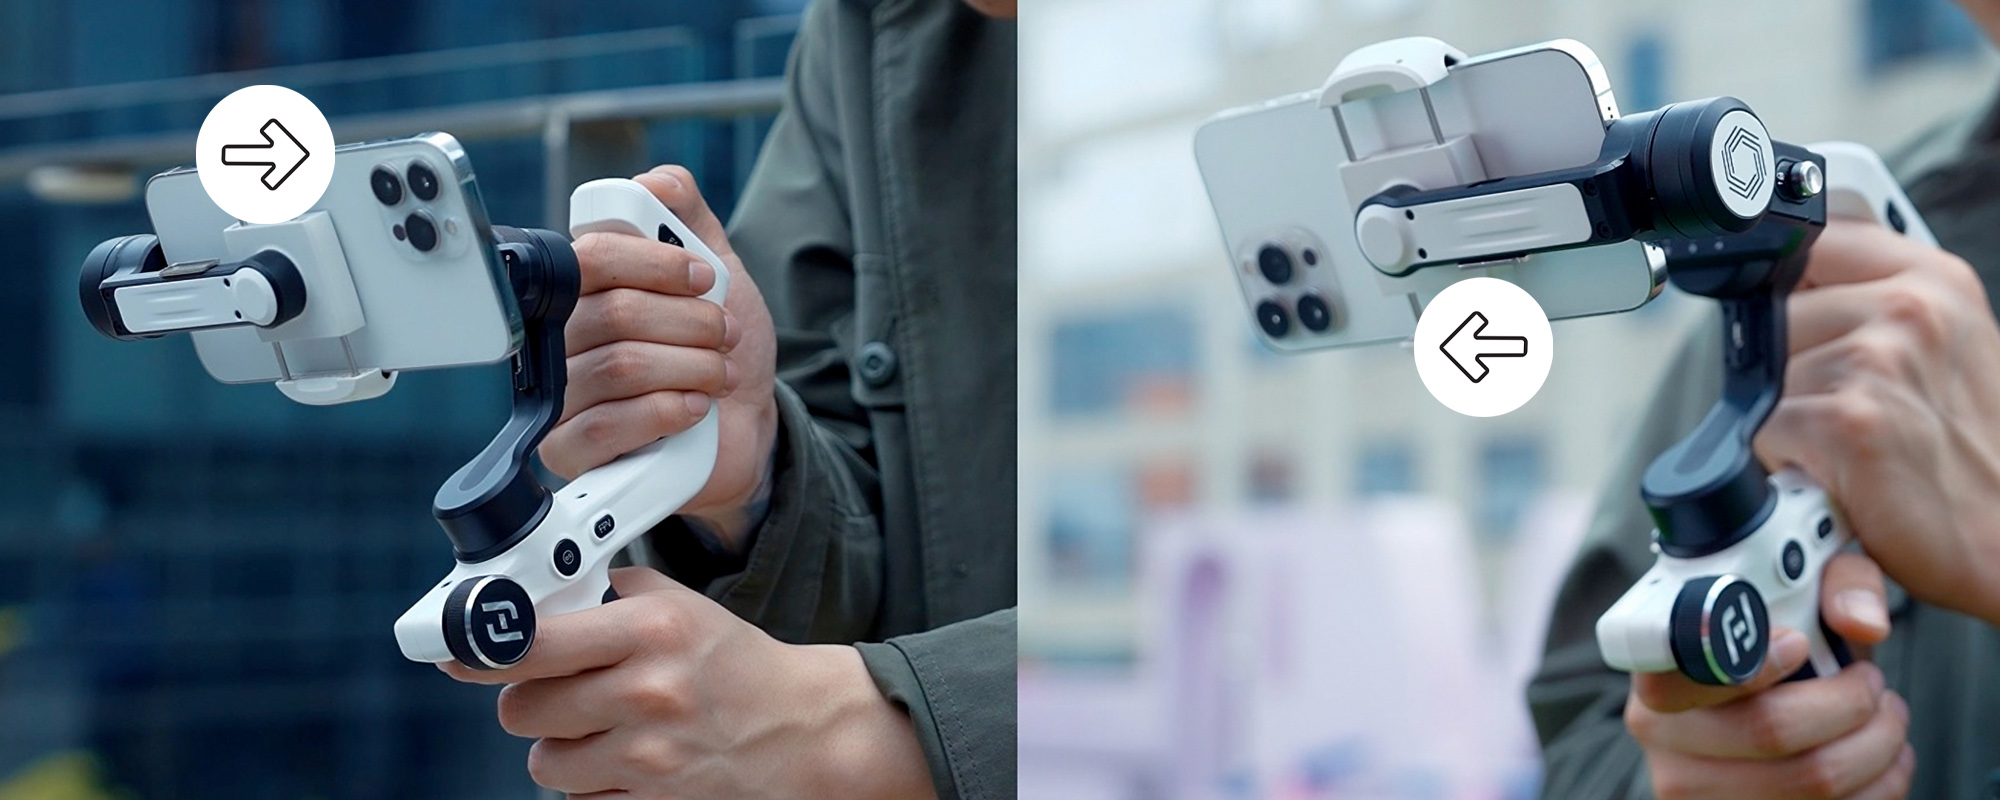 Gimbal ręczny FeiyuTech Scorp mini P do smartfonów - biały